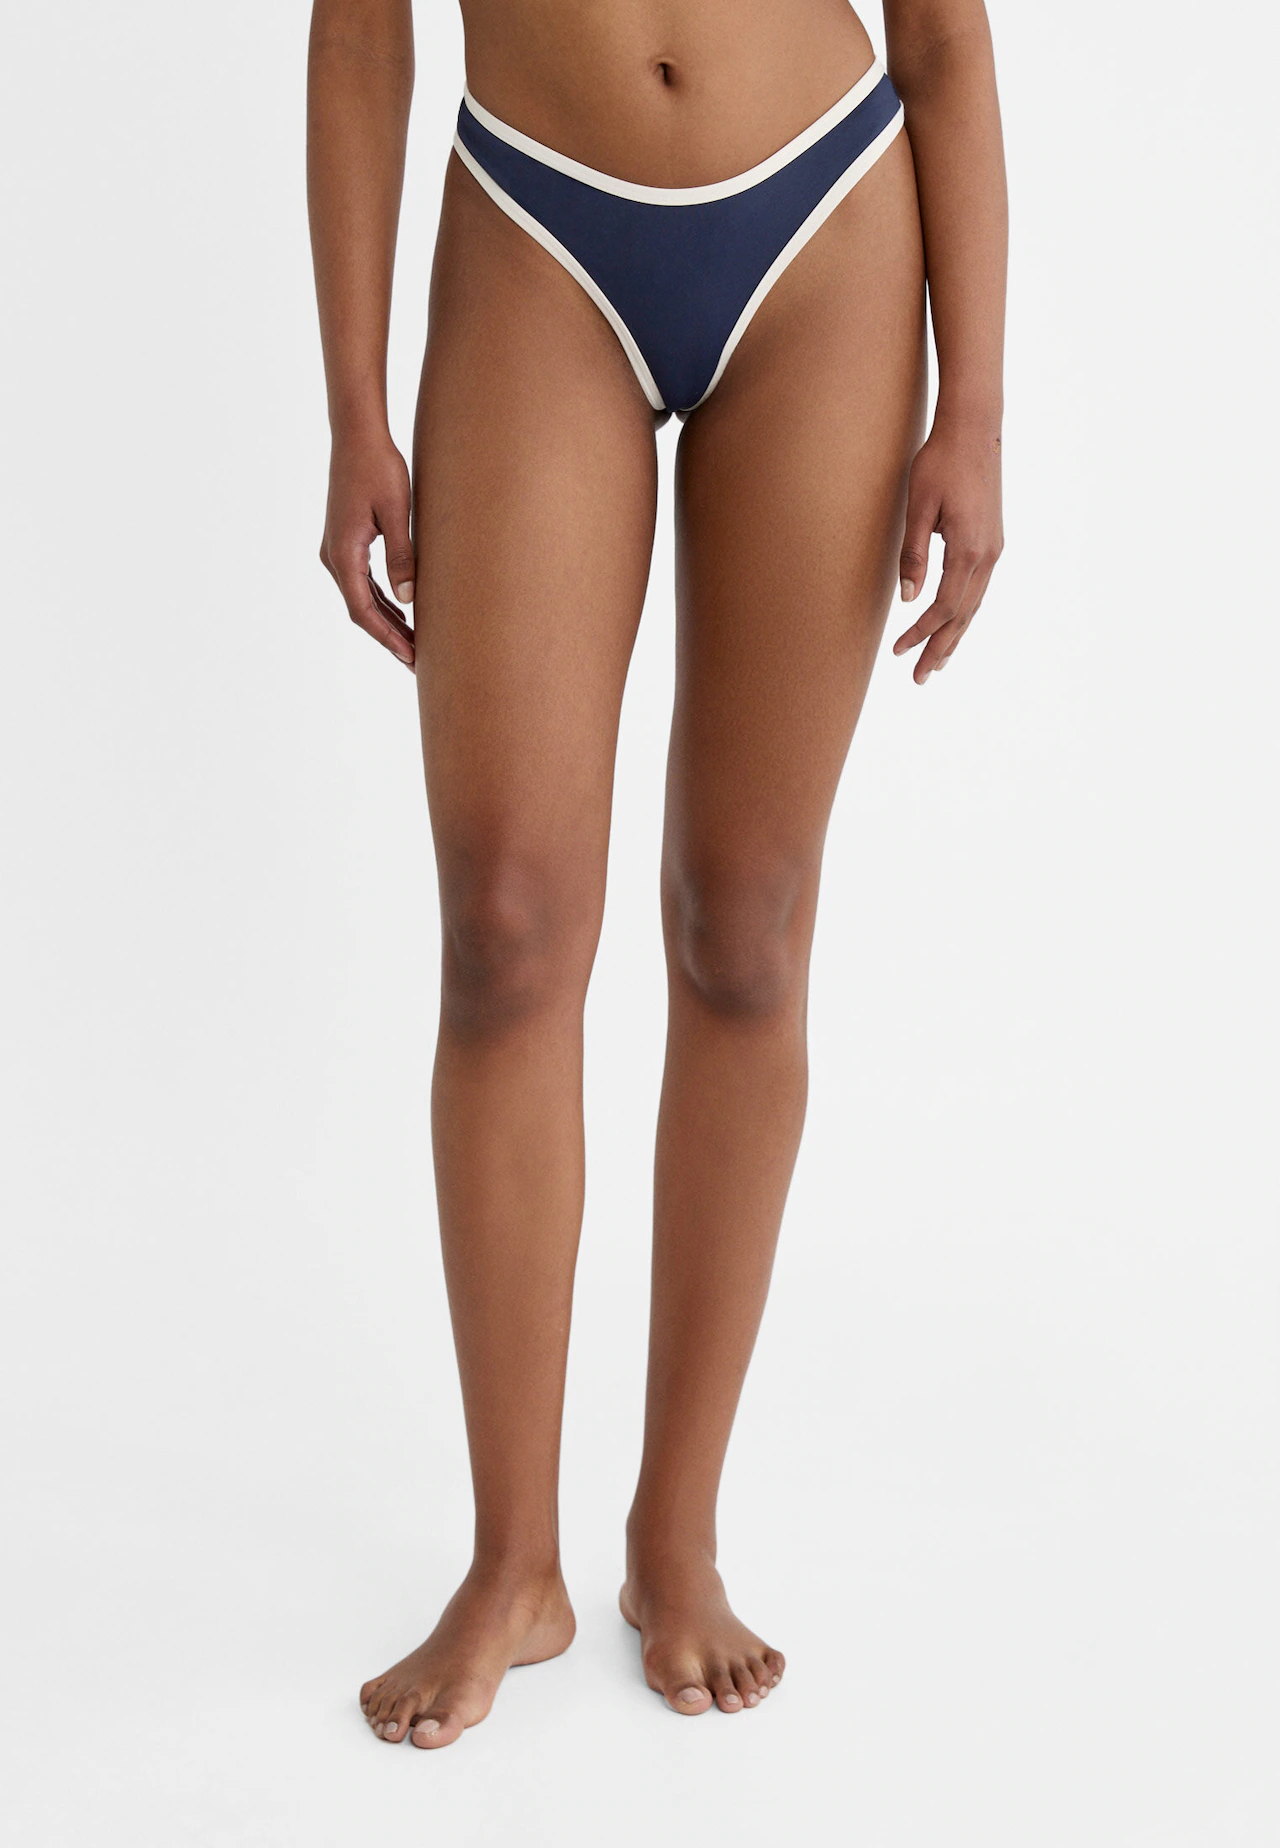 Contrast Brazilian bikini bottoms - Women's fashion